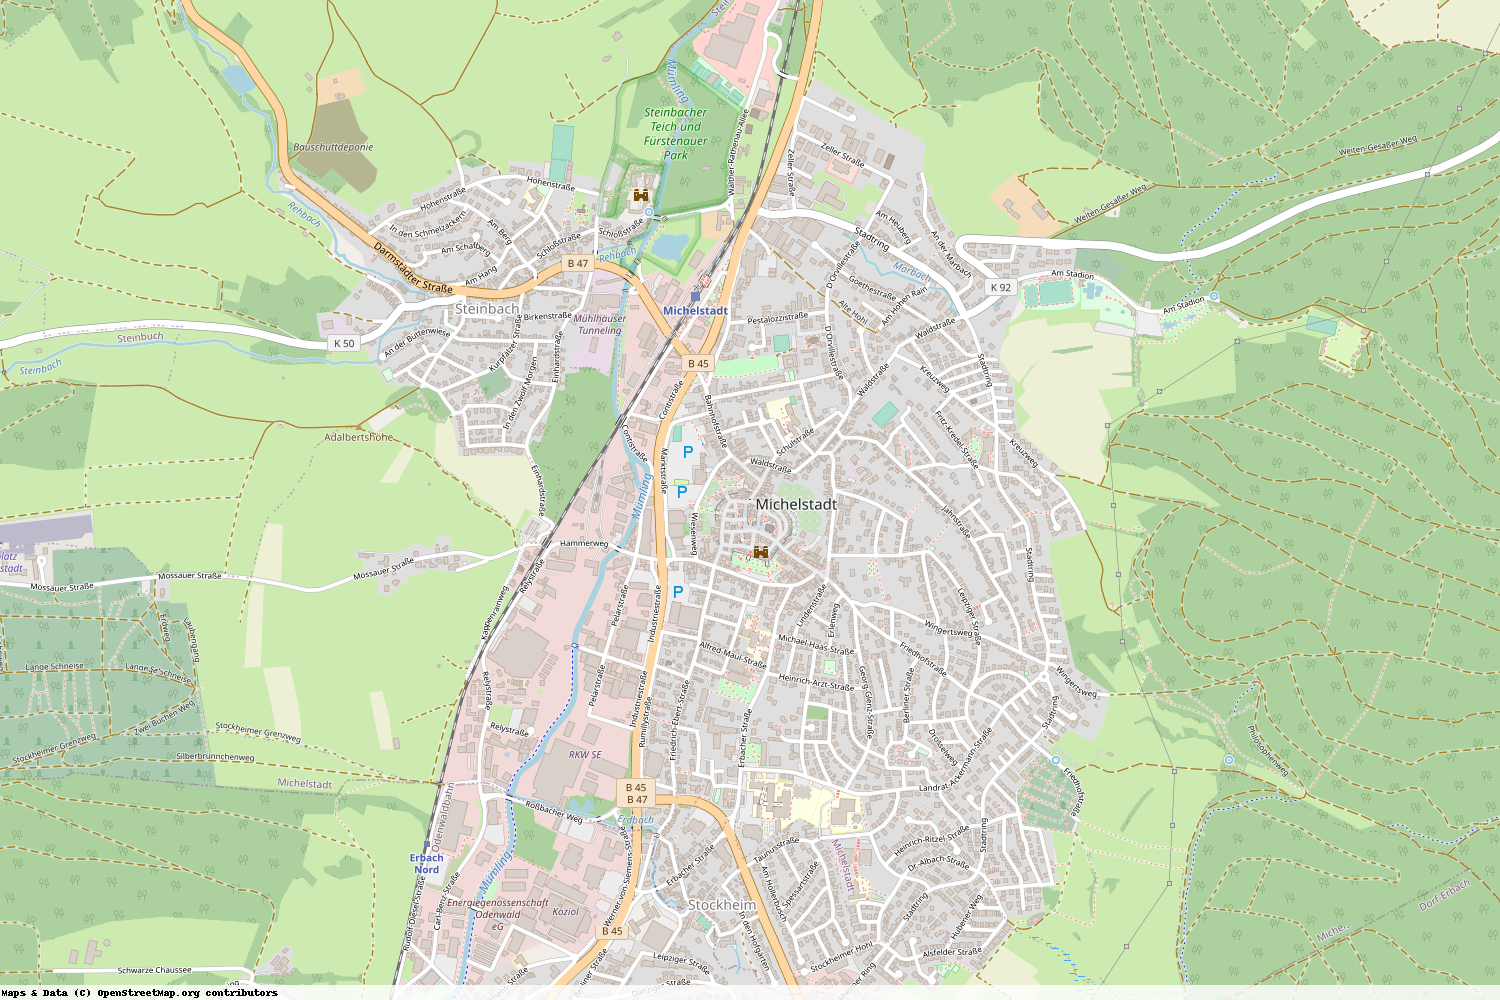 Ist gerade Stromausfall in Hessen - Odenwaldkreis - Michelstadt?